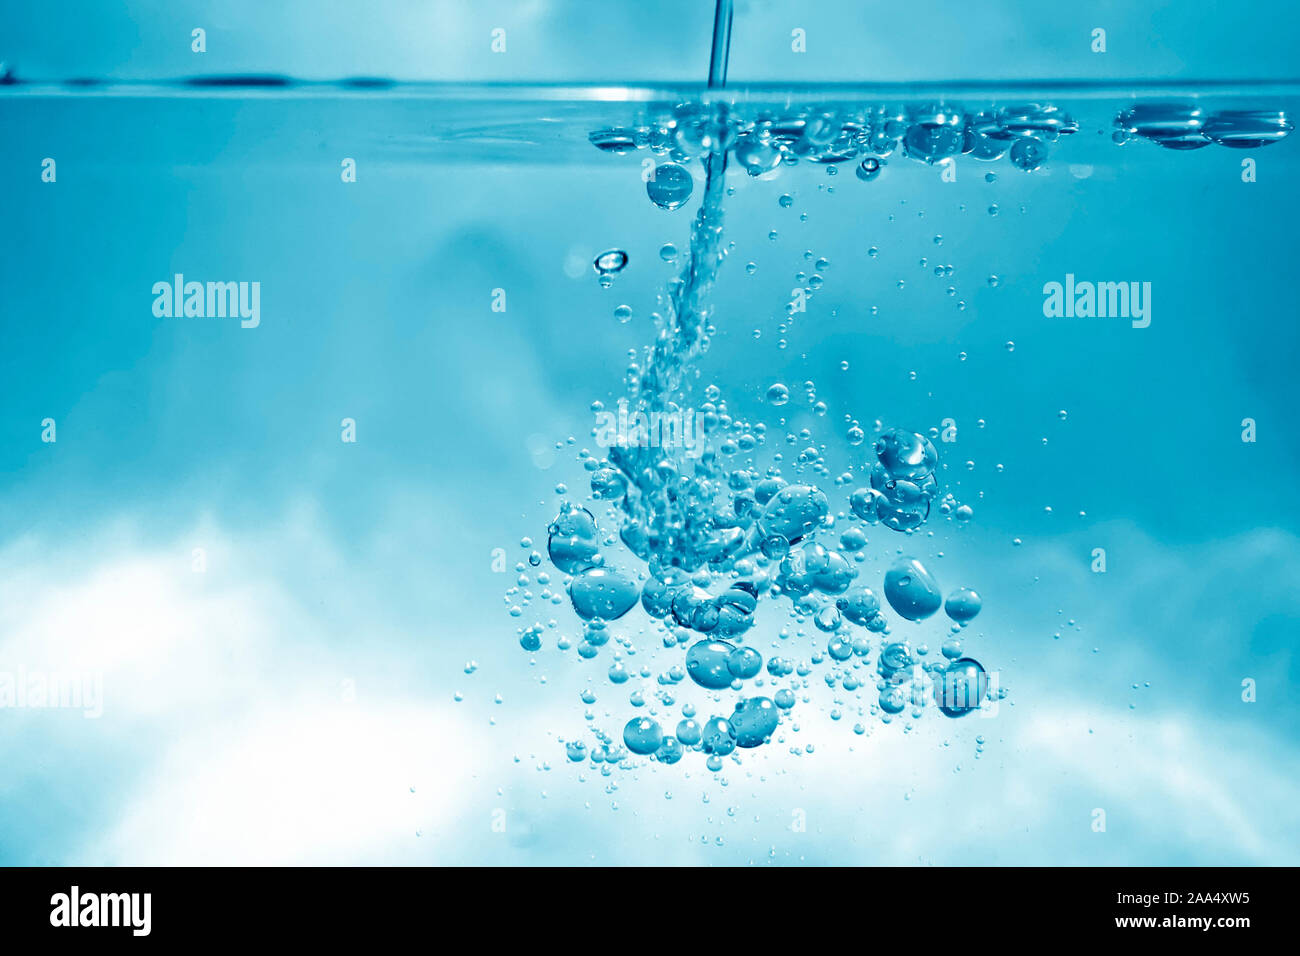 Ein schoener Hintergrund, bestehend aus Wasserblasen unter Wasser Stock Photo